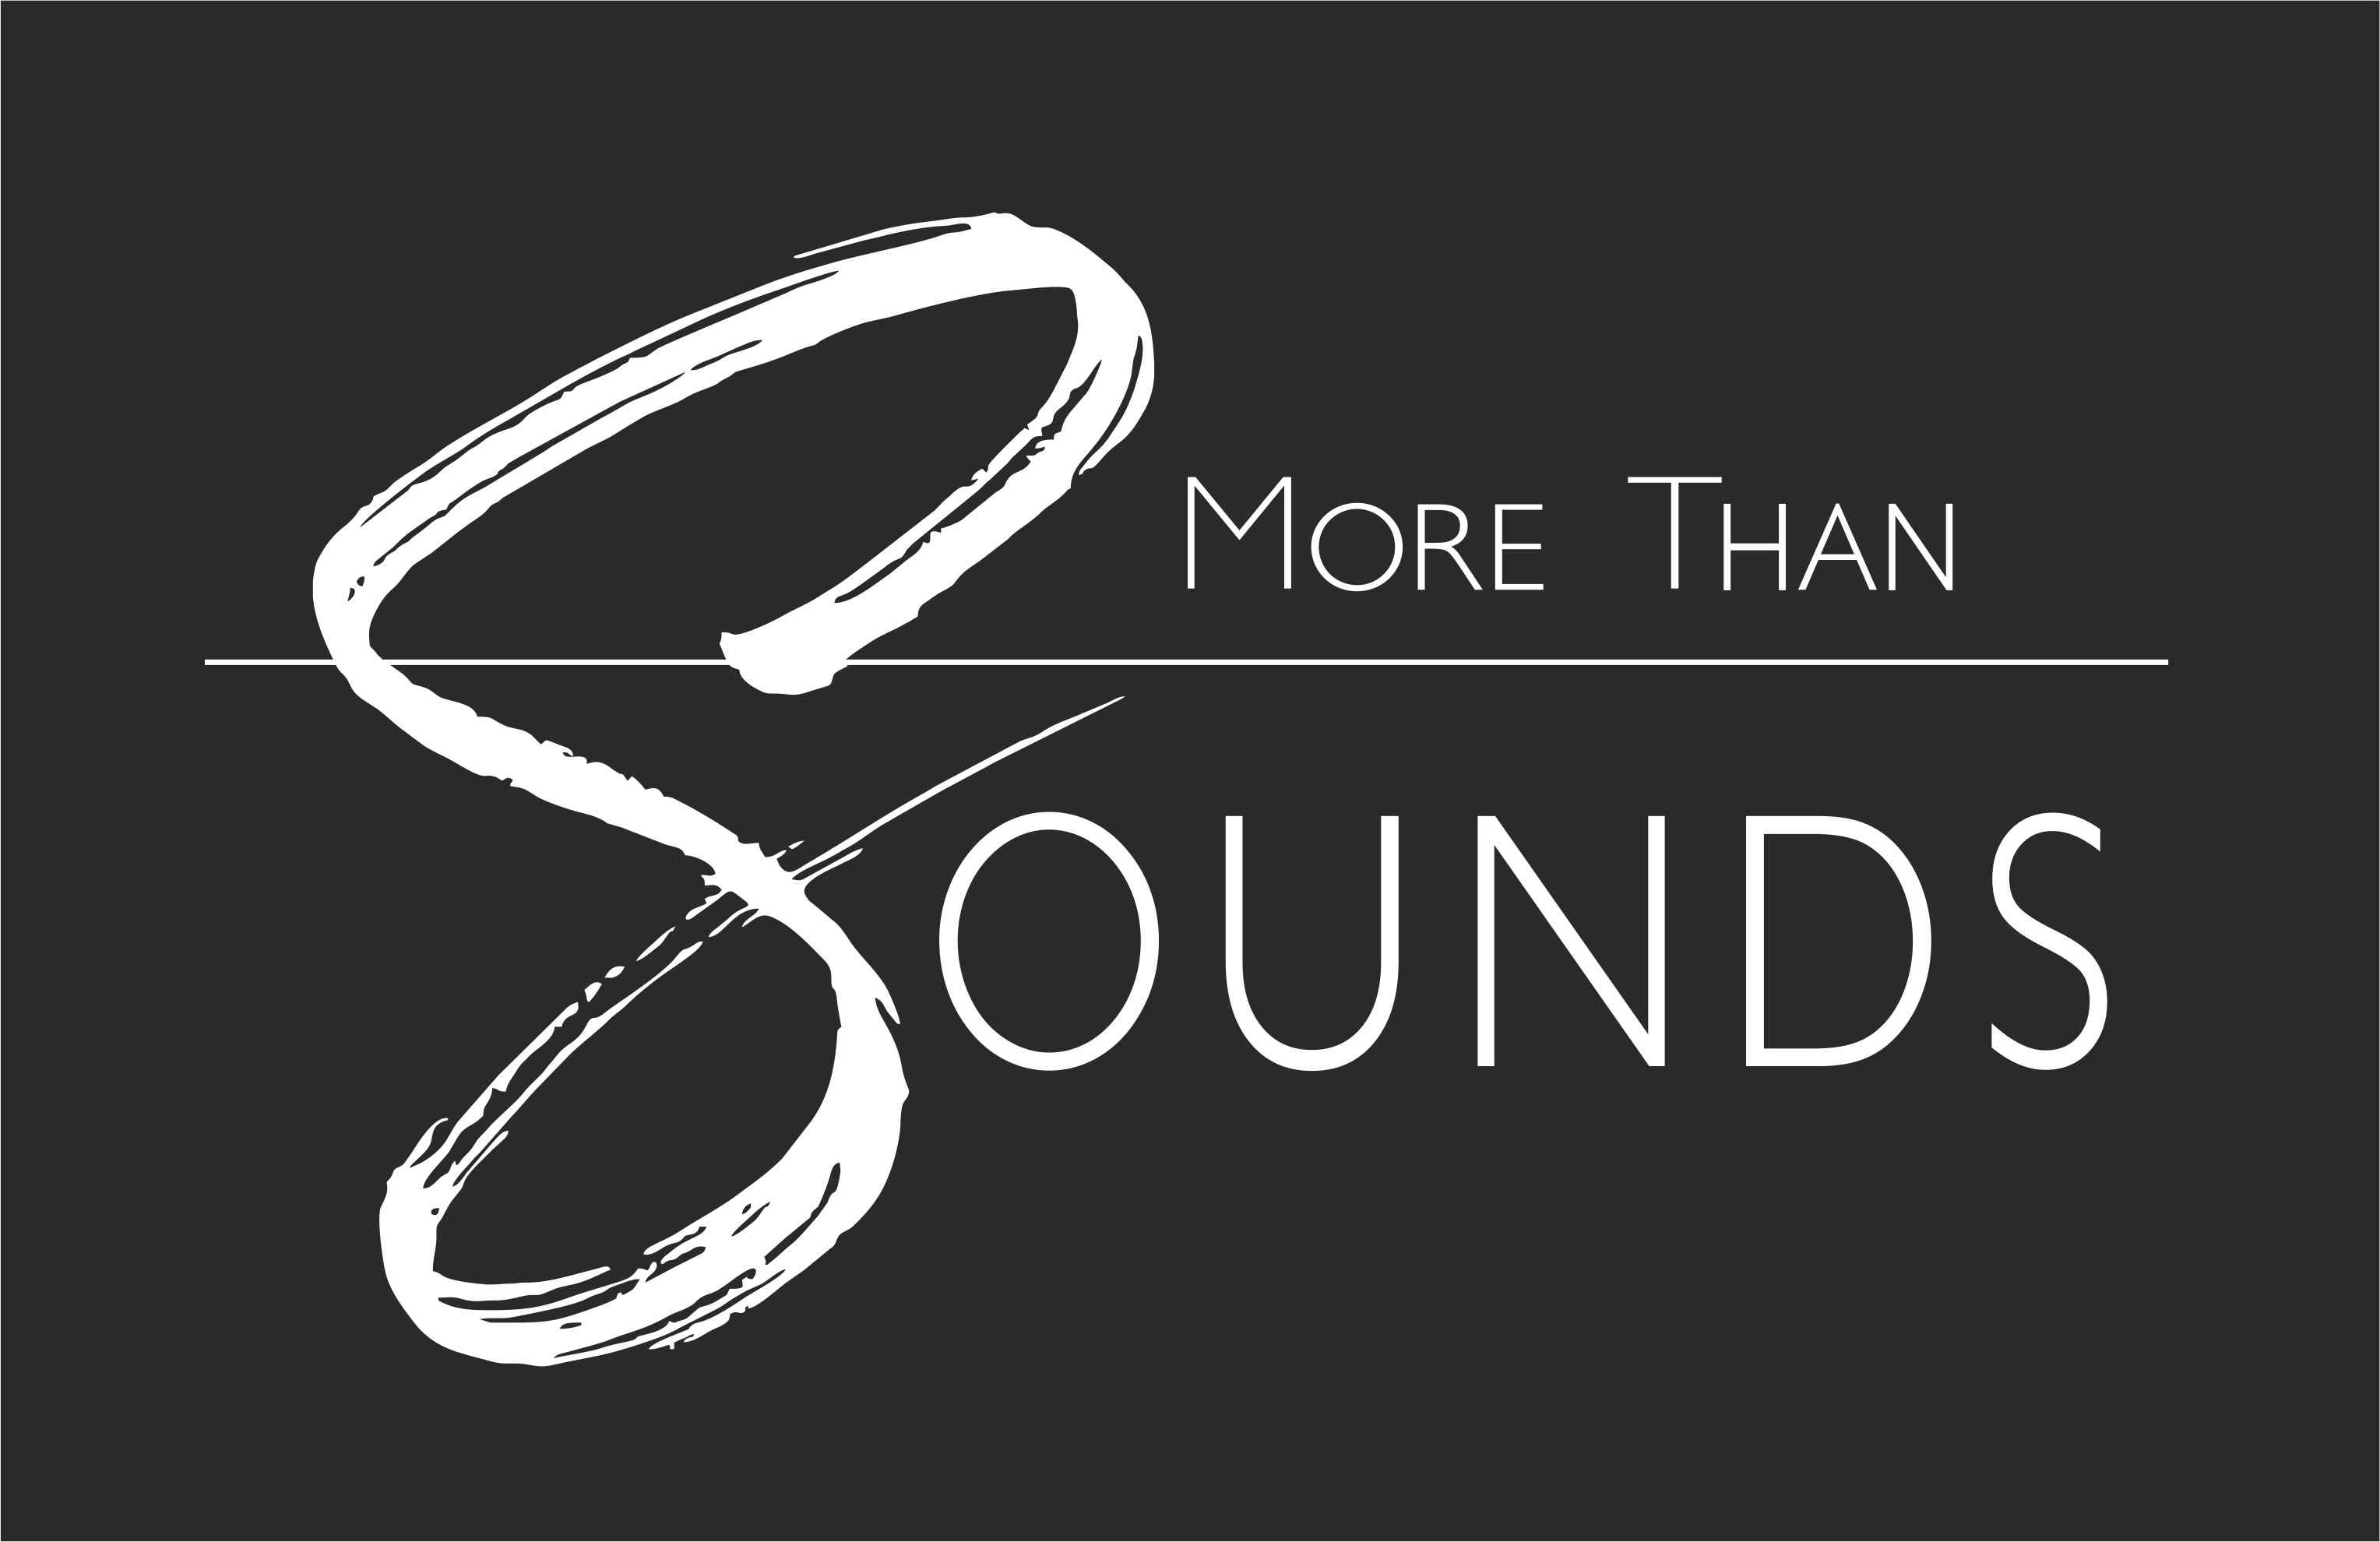 More than Sounds by Restaurant Rössli